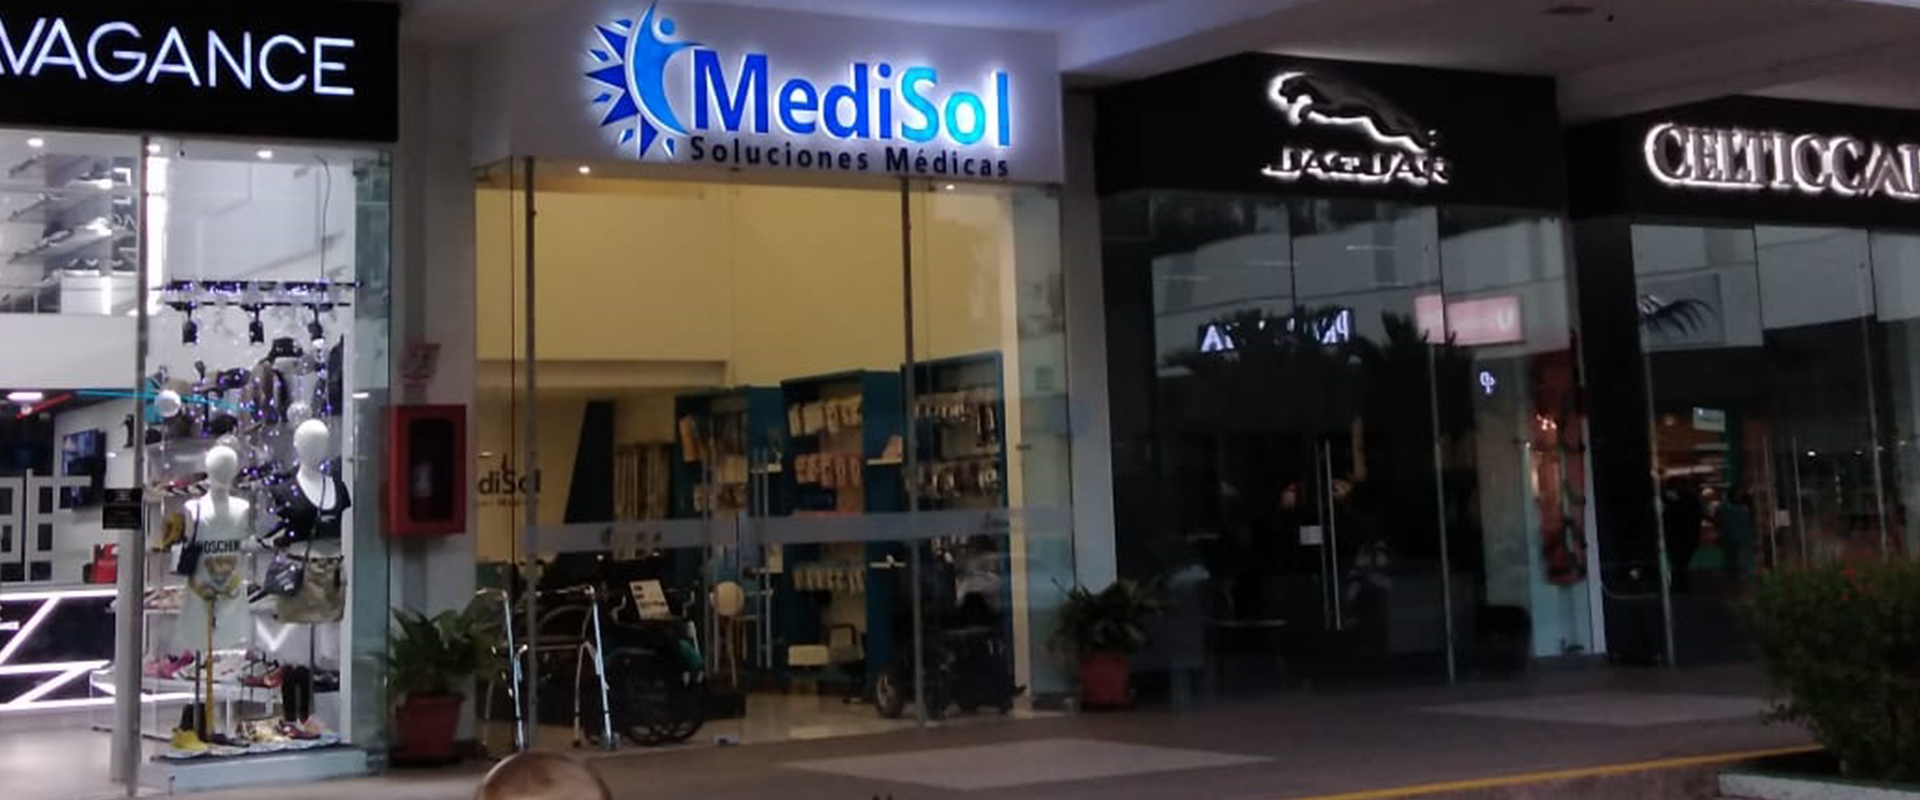 MediSol Soluciones Medicas